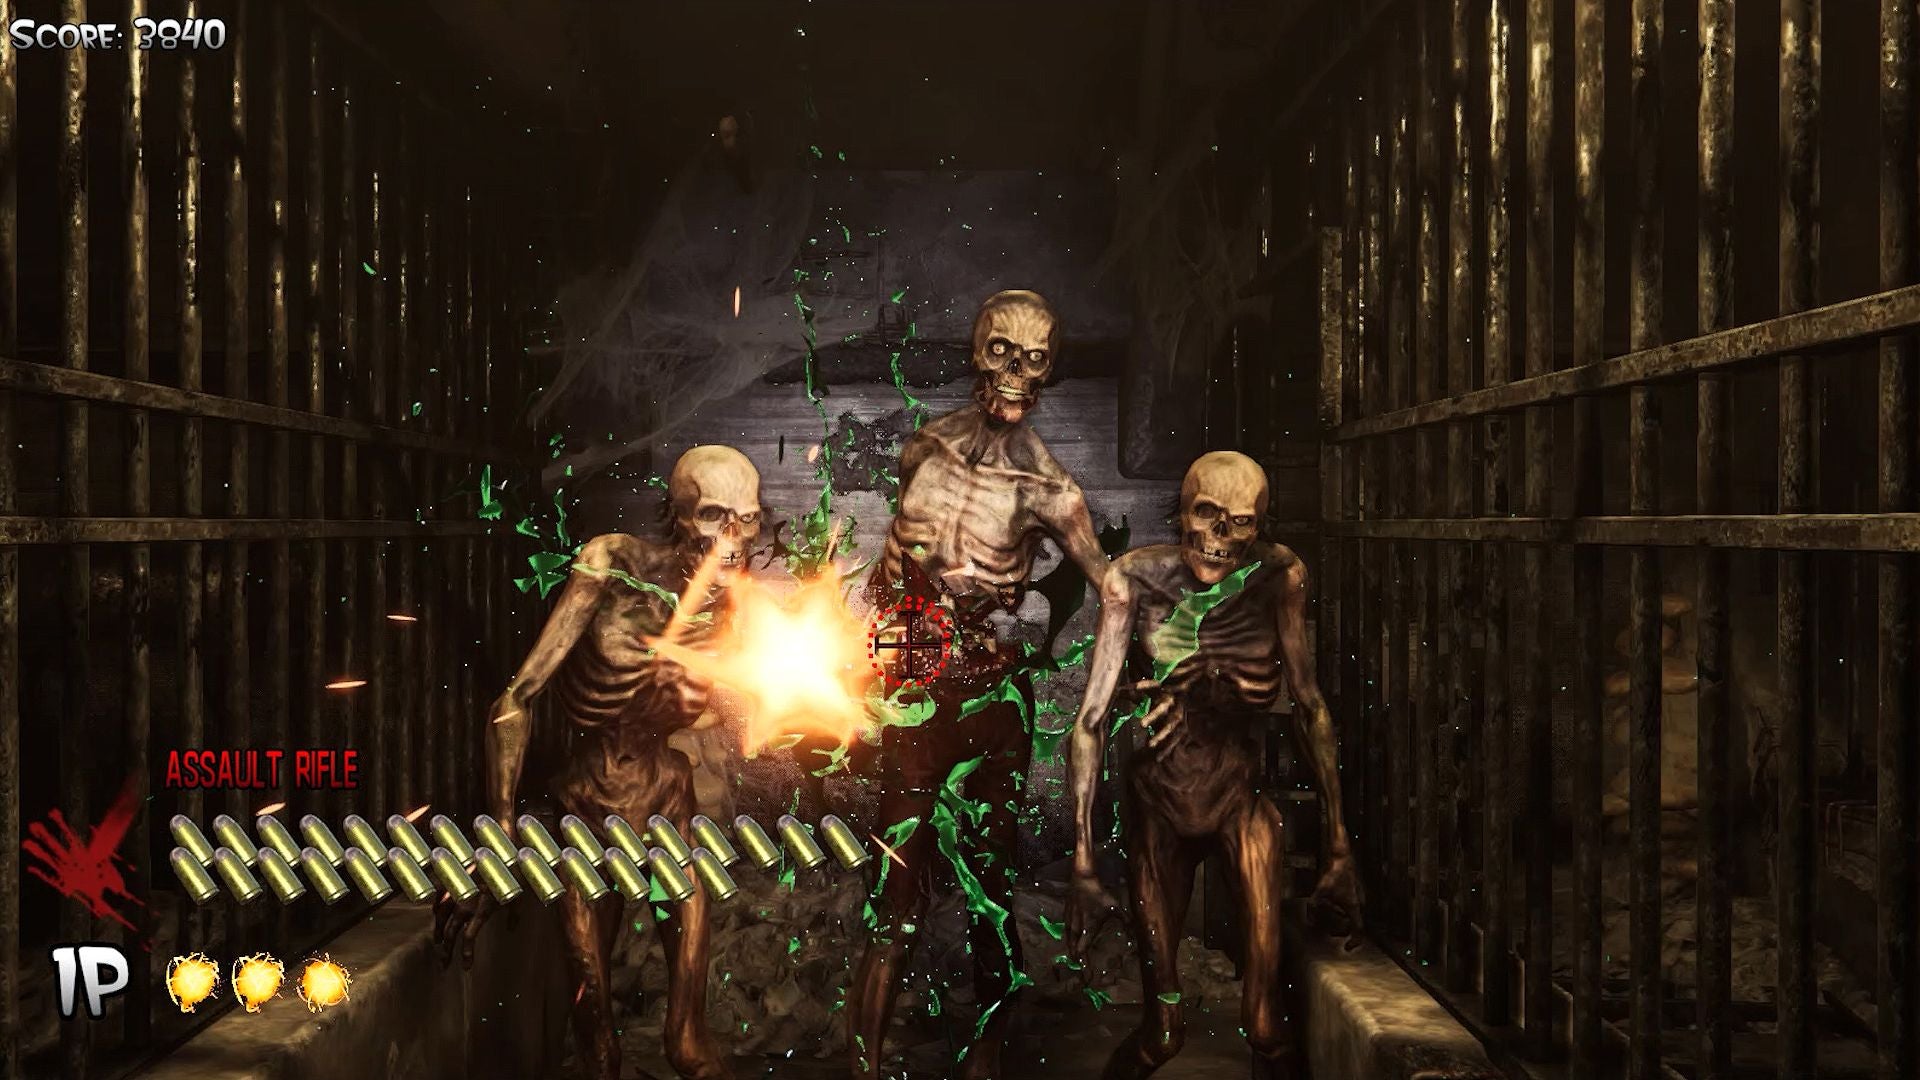 死亡之屋的图片:重制版“Limidead Edition”现已在PS4上可用